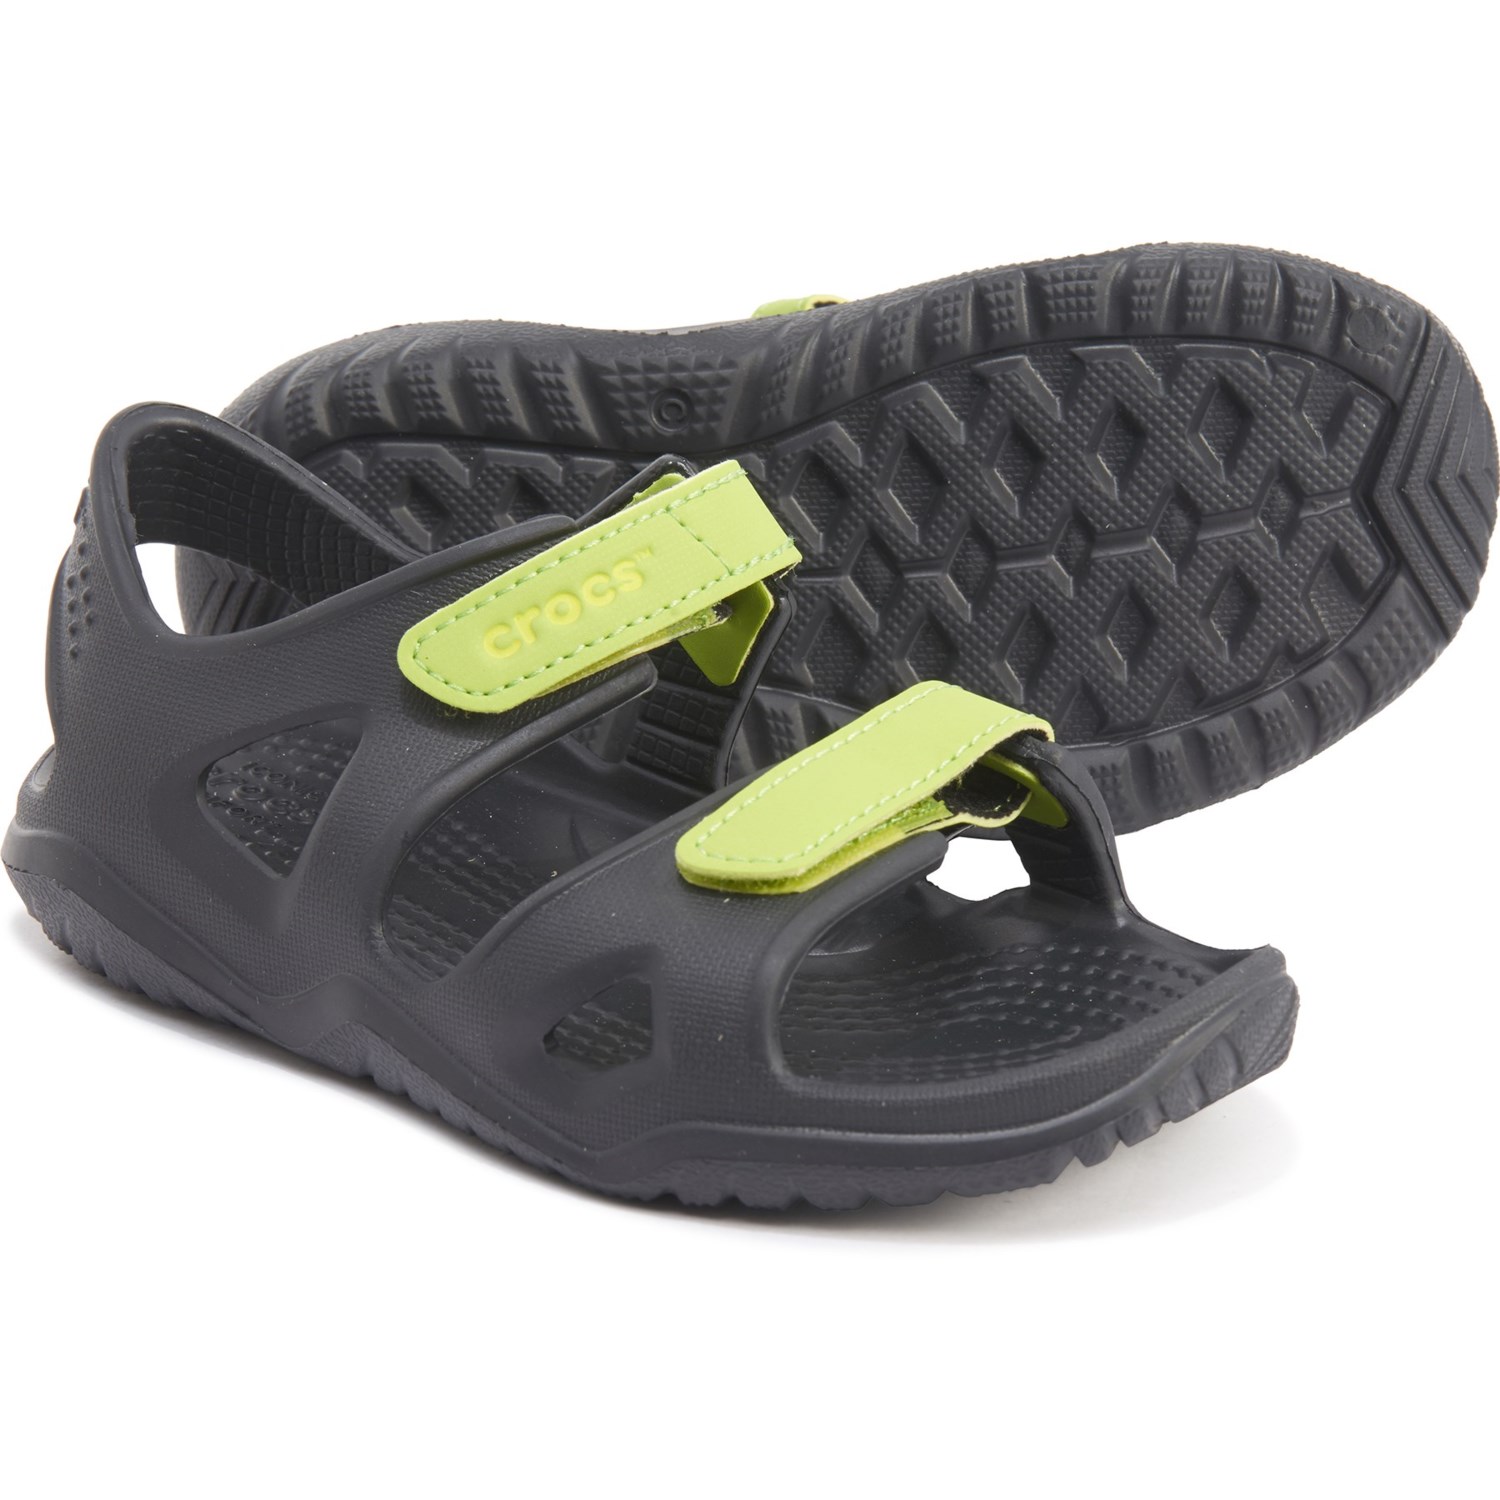 crocs green sandals